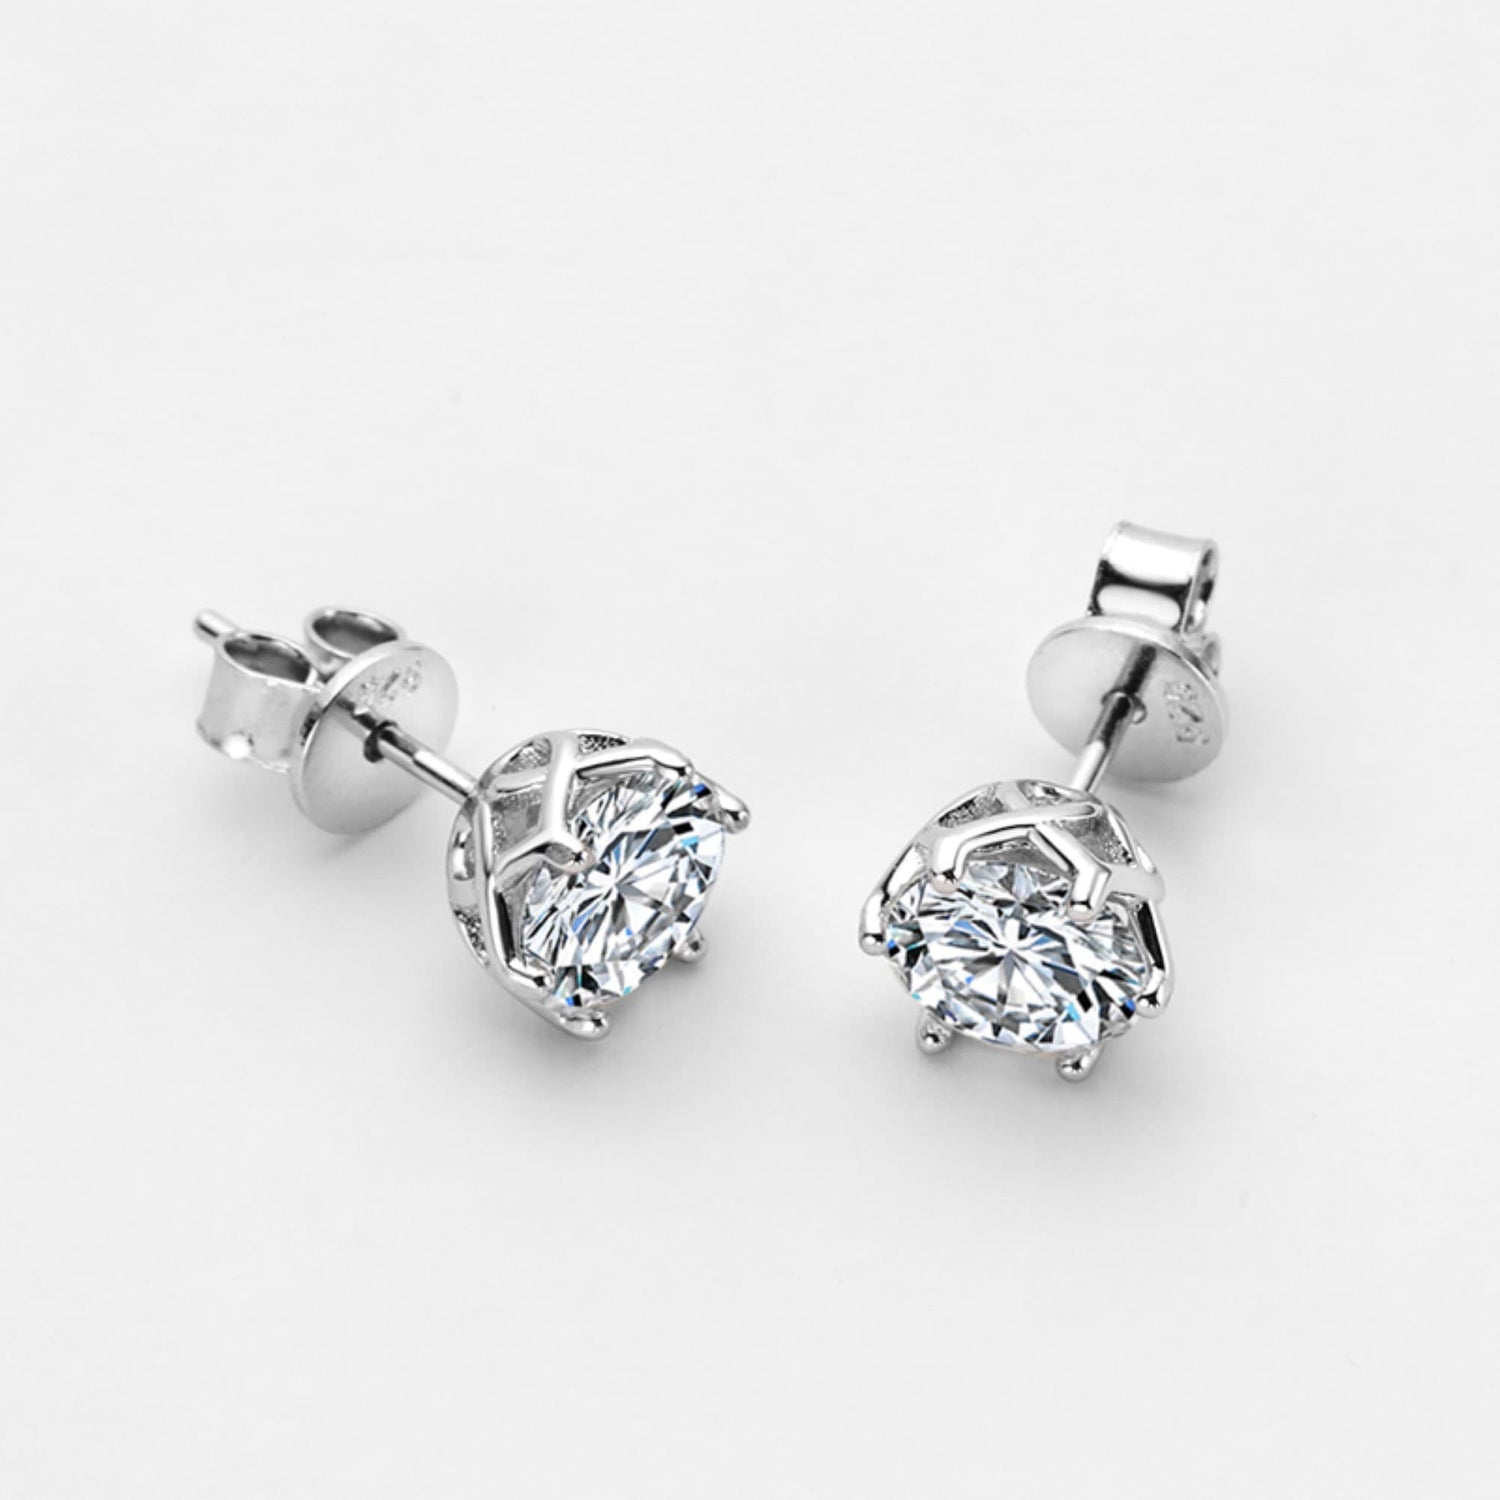 0.5-1 Carat Natural Moissanite Stud Earrings, Solid 925 Sterling Silver Earrings \ Wedding Stud Earrings \ Moissanite Sterling Silver Studs